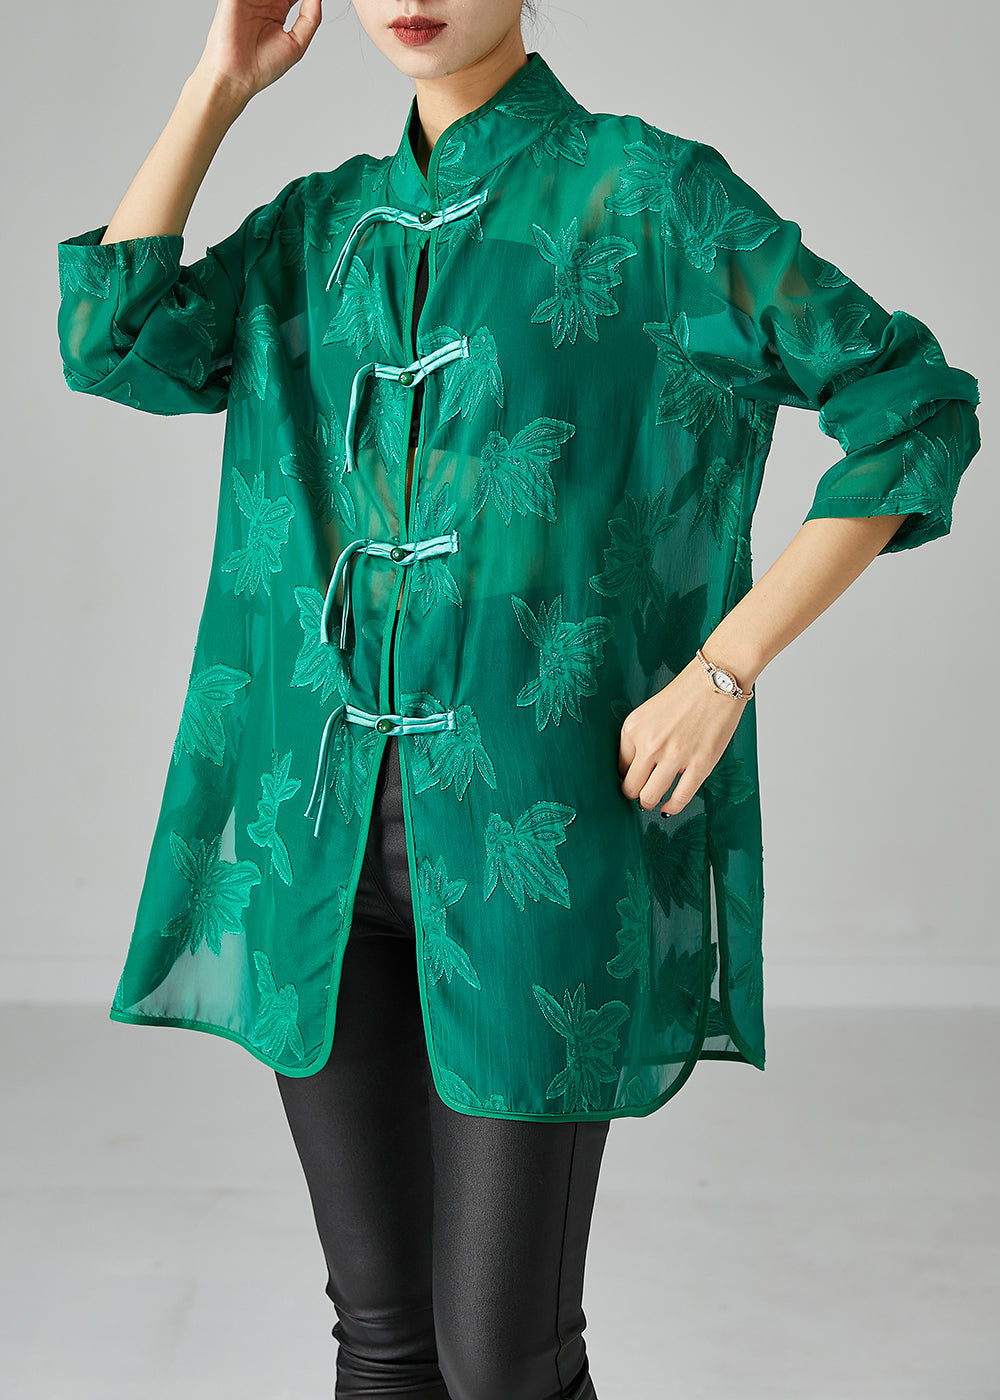 Green Chiffon UPF 50+ Shirts Oversized Chinese Button Fall